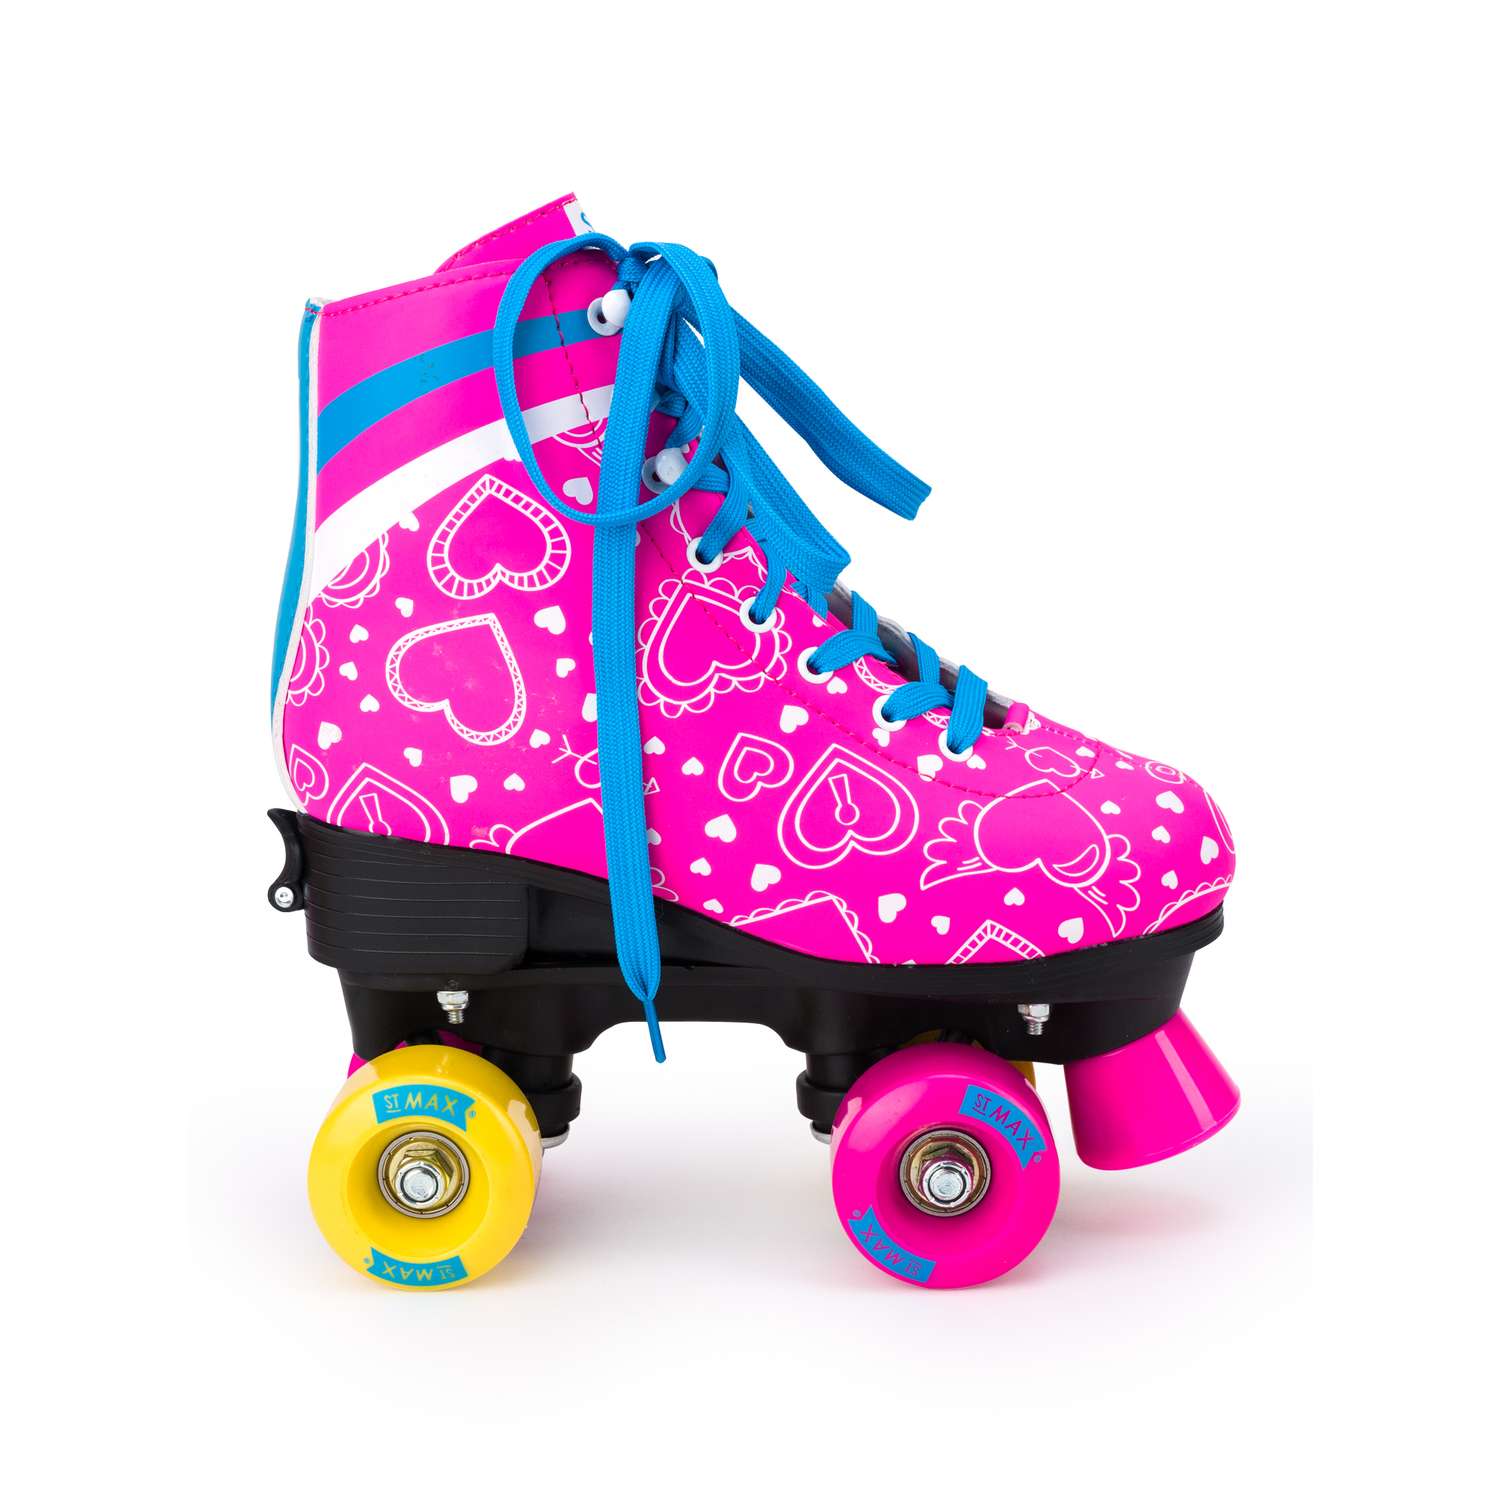 Роликовые коньки SXRide Roller skate YXSKT04BLPN36 цвет розовые с белыми сердечкам размер 36 - фото 5